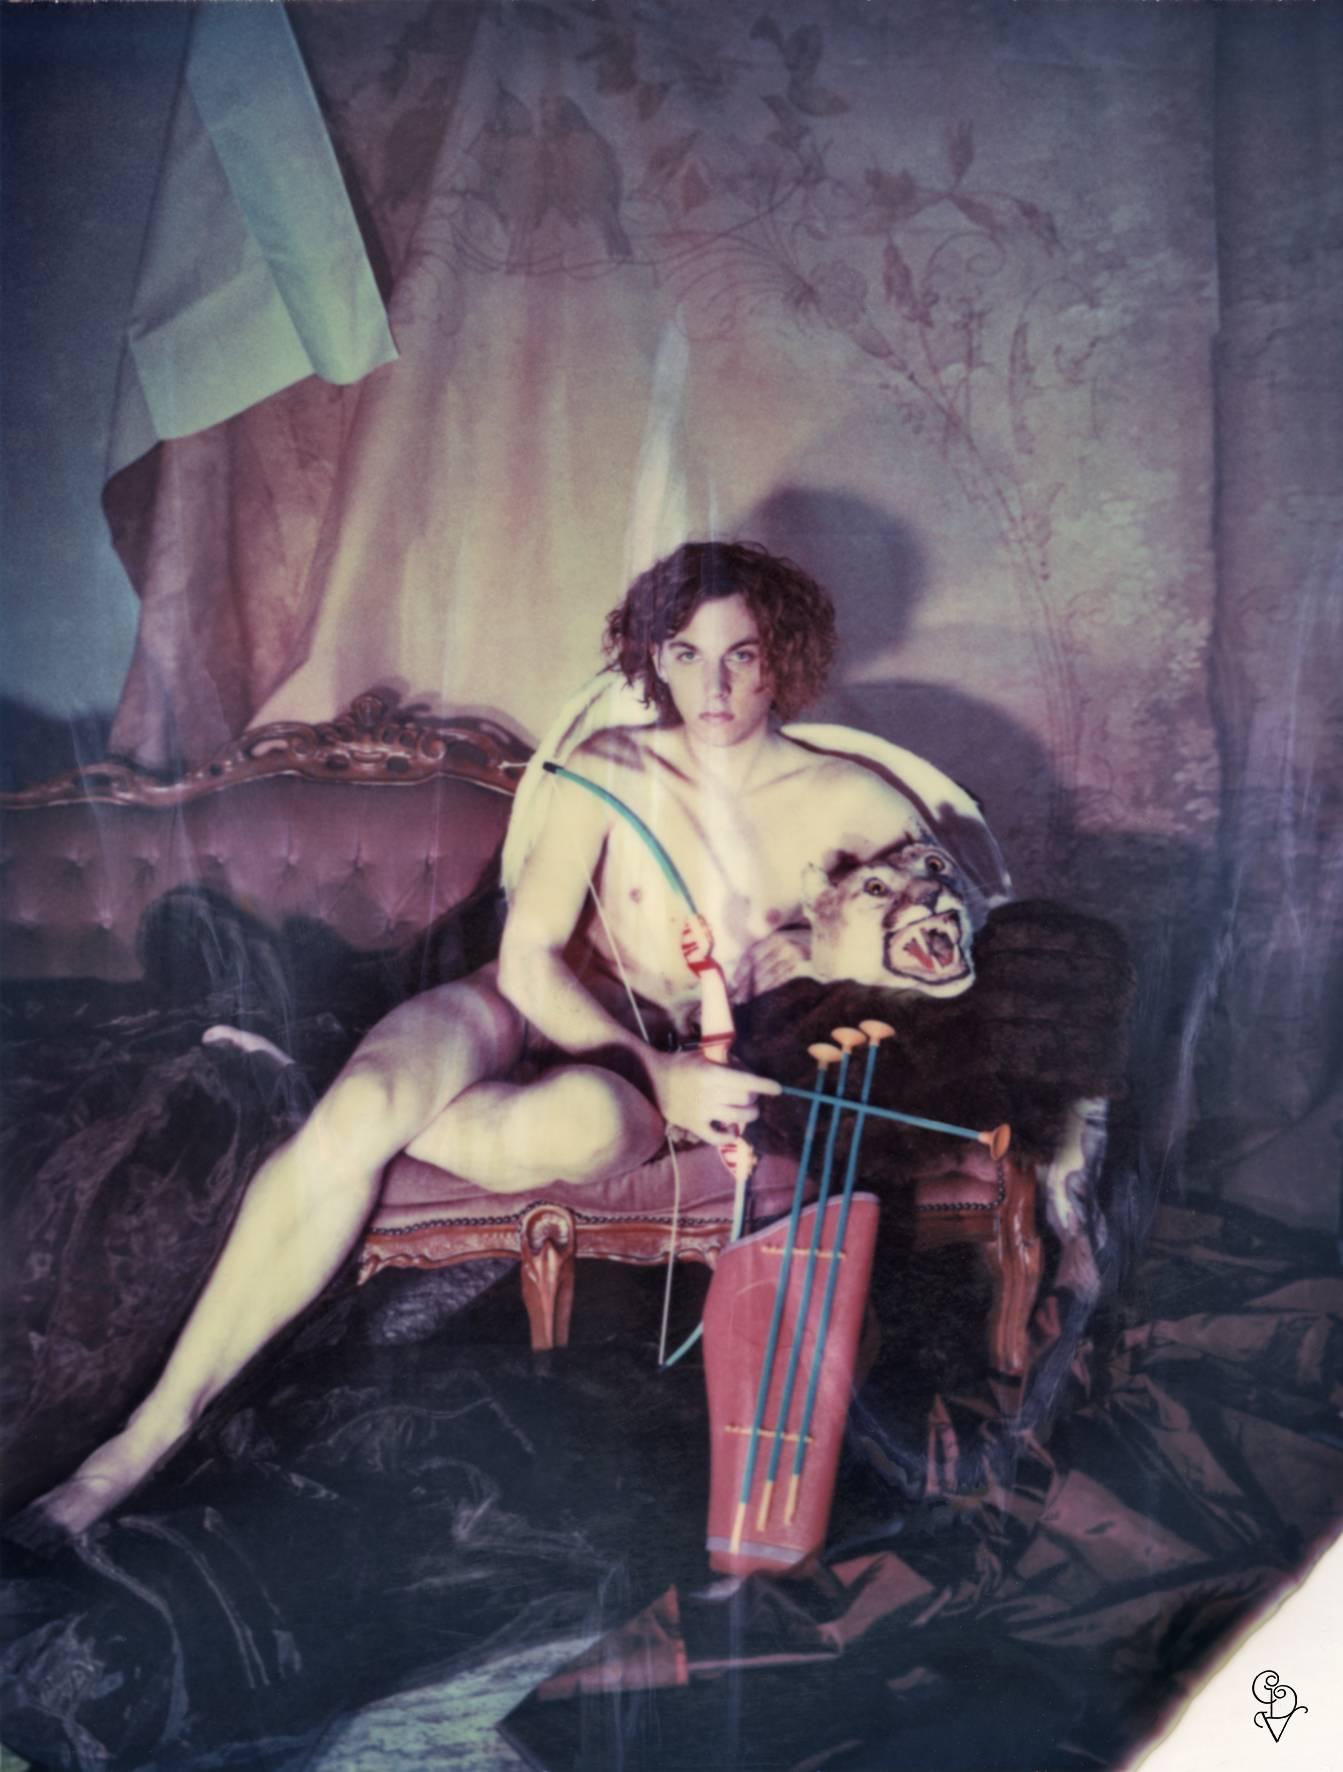 Carmen de Vos Color Photograph - The Hunter (Odd Stories)